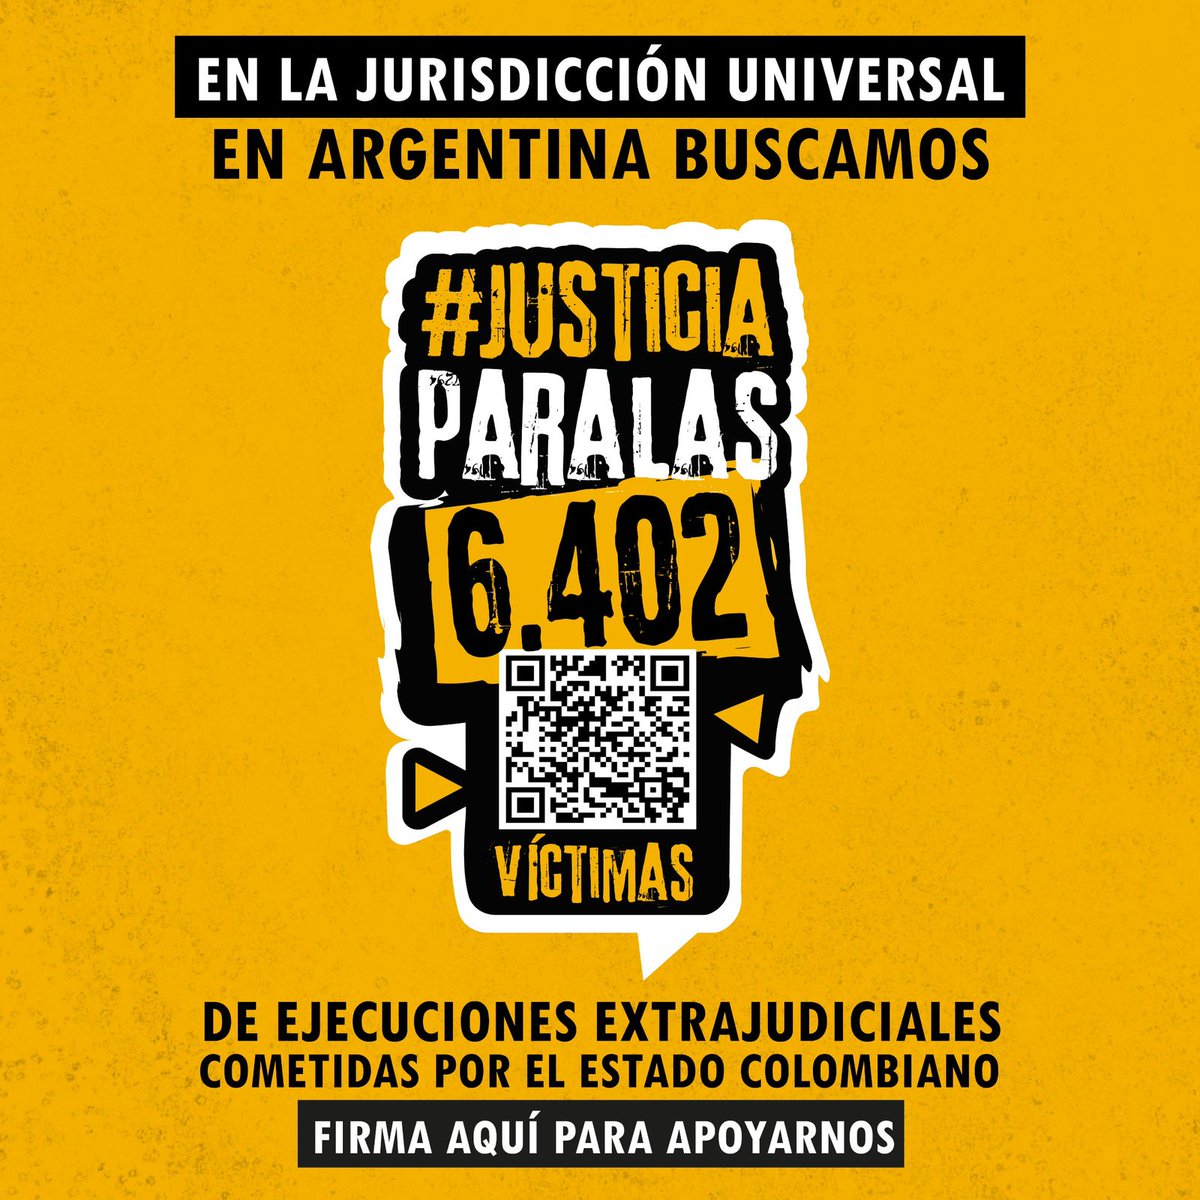 #Atención 📣 Desde la #CampañaPorLaVerdad les invitamos a firmar esta petición que busca #JusticiaParaLas6402 víctimas de ejecuciones extrajudiciales cometidas por el Estado colombiano. ✍️ Firma la siguiente acción para apoyarnos 👇🏼 change.org/p/une-tu-voz-a…